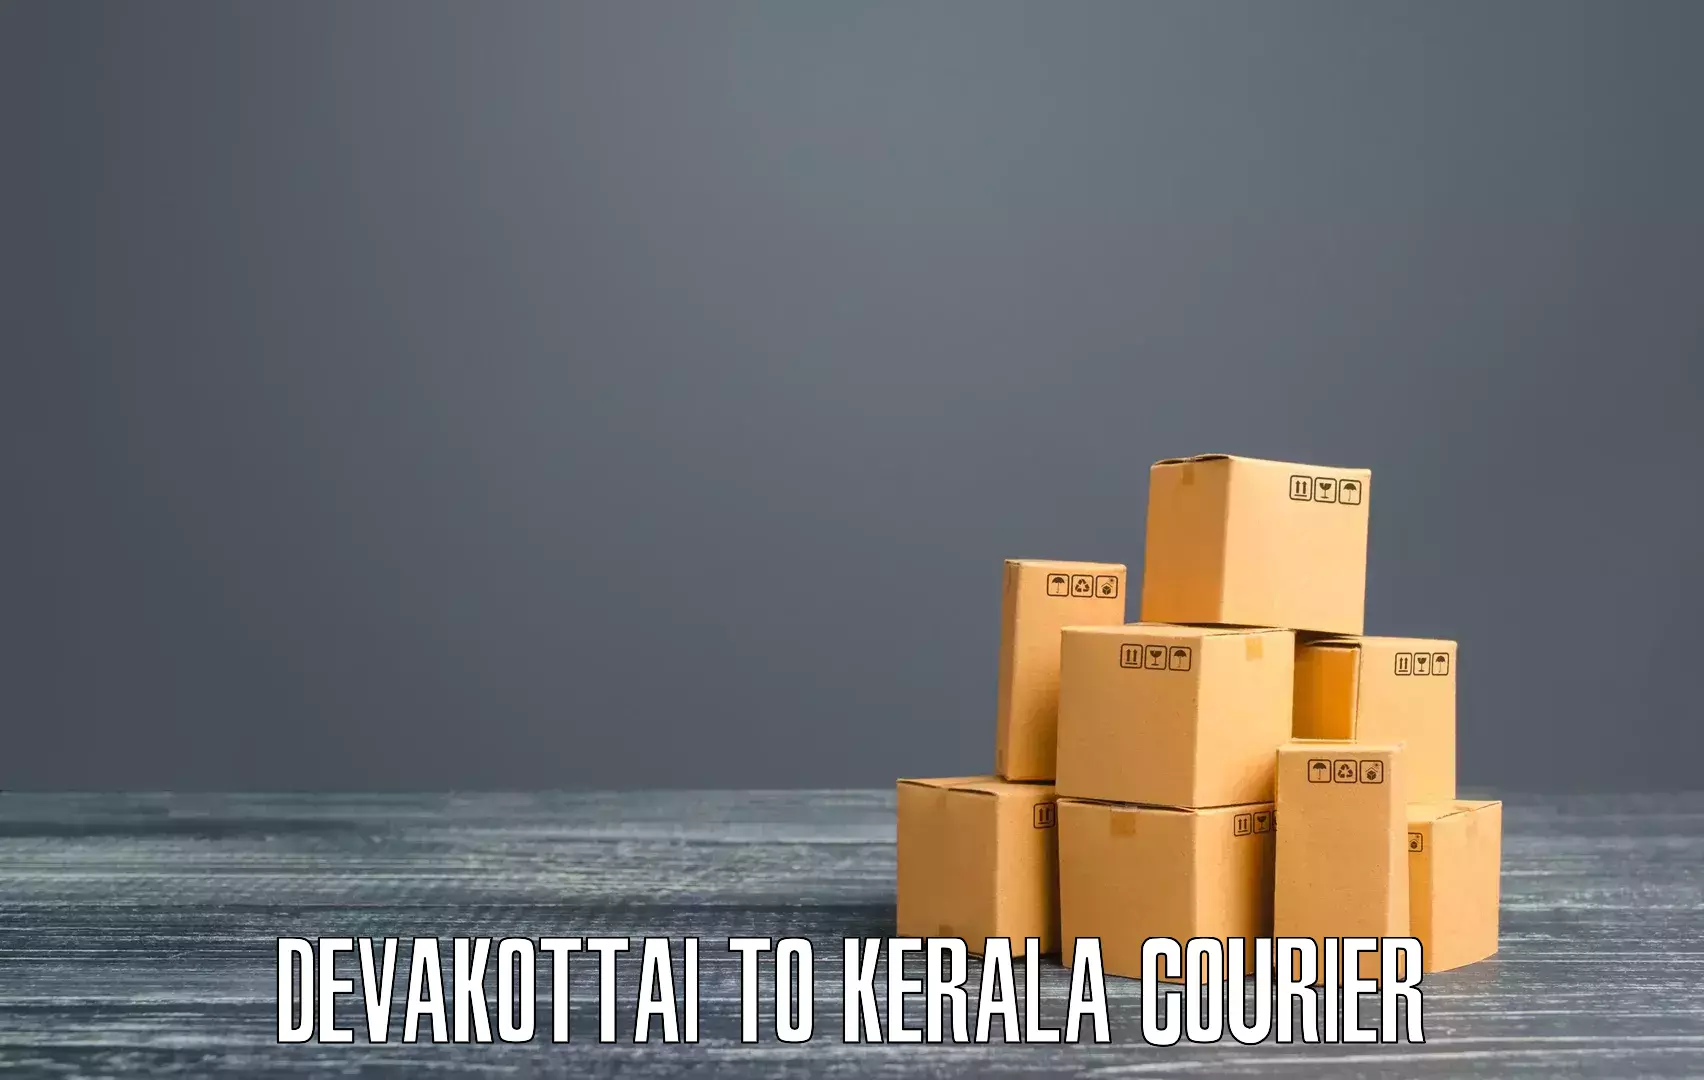 Advanced courier platforms Devakottai to Kakkur